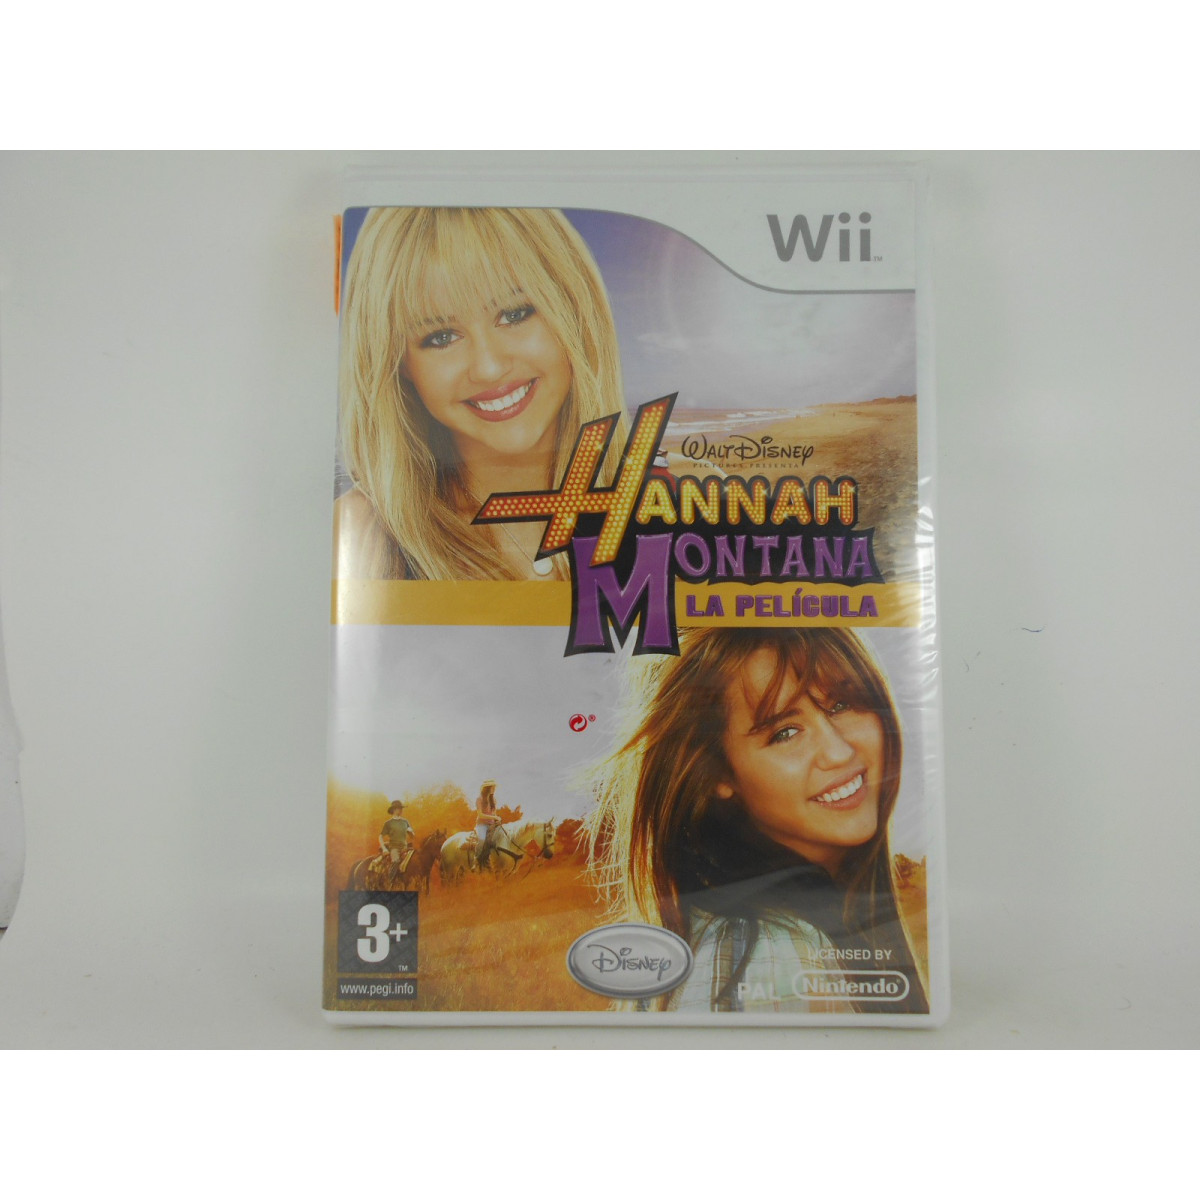 Wii comprar Hannah Montana: La Pelicula Chollogames Videojuegos Retro